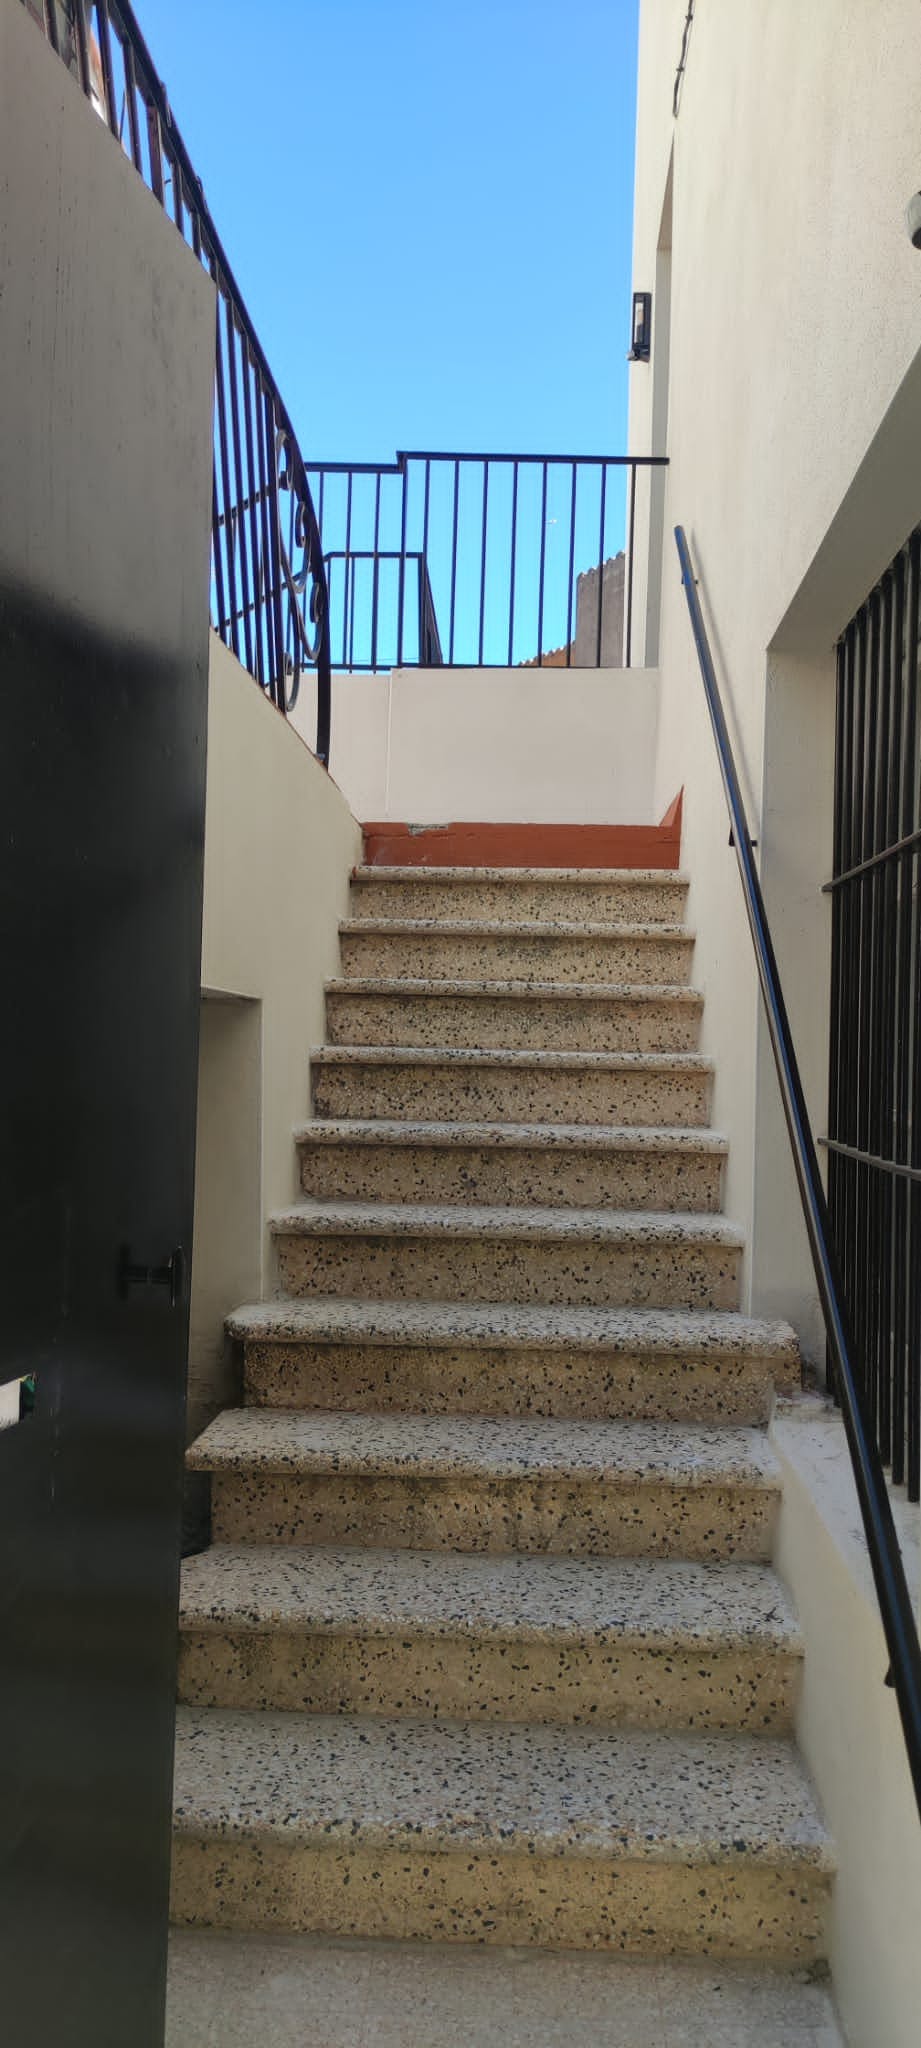 Escalier extérieur dans les appartements de collioure